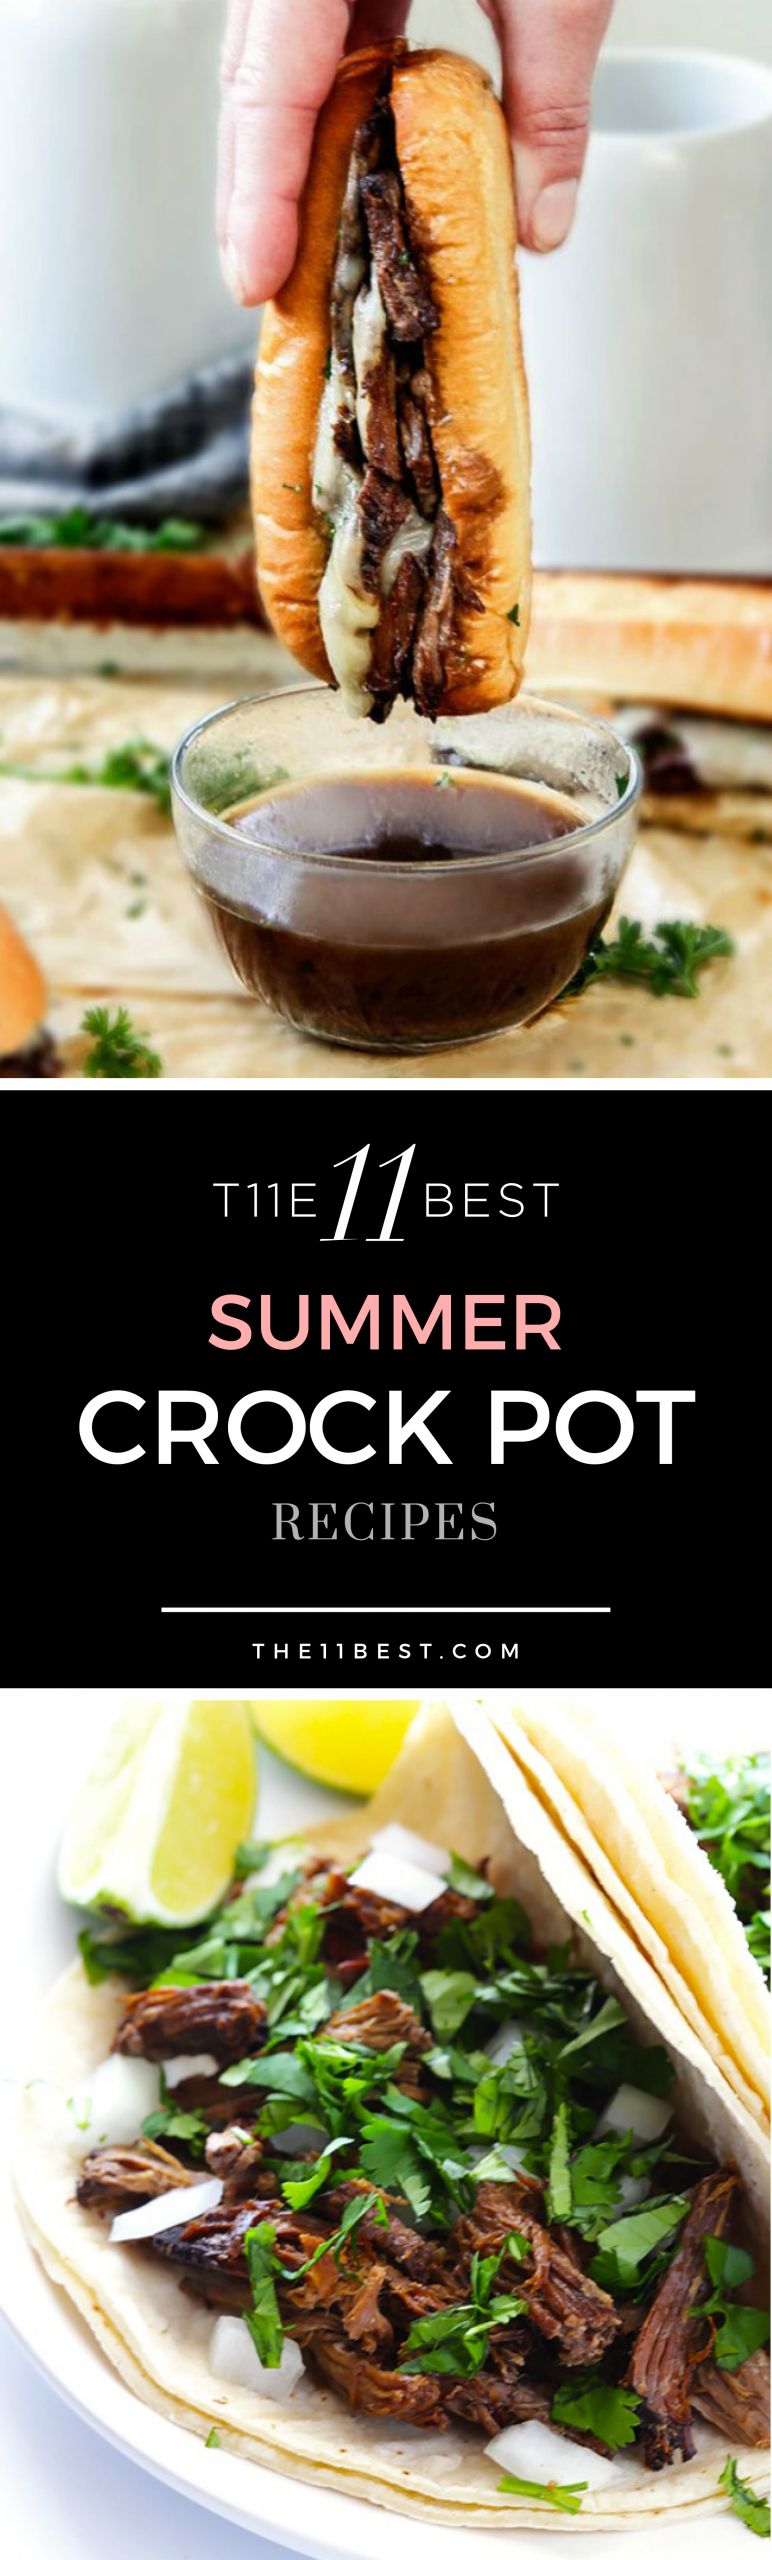 Summer Crock Pot Ideas
 The 11 Best Summer Crock Pot Recipes